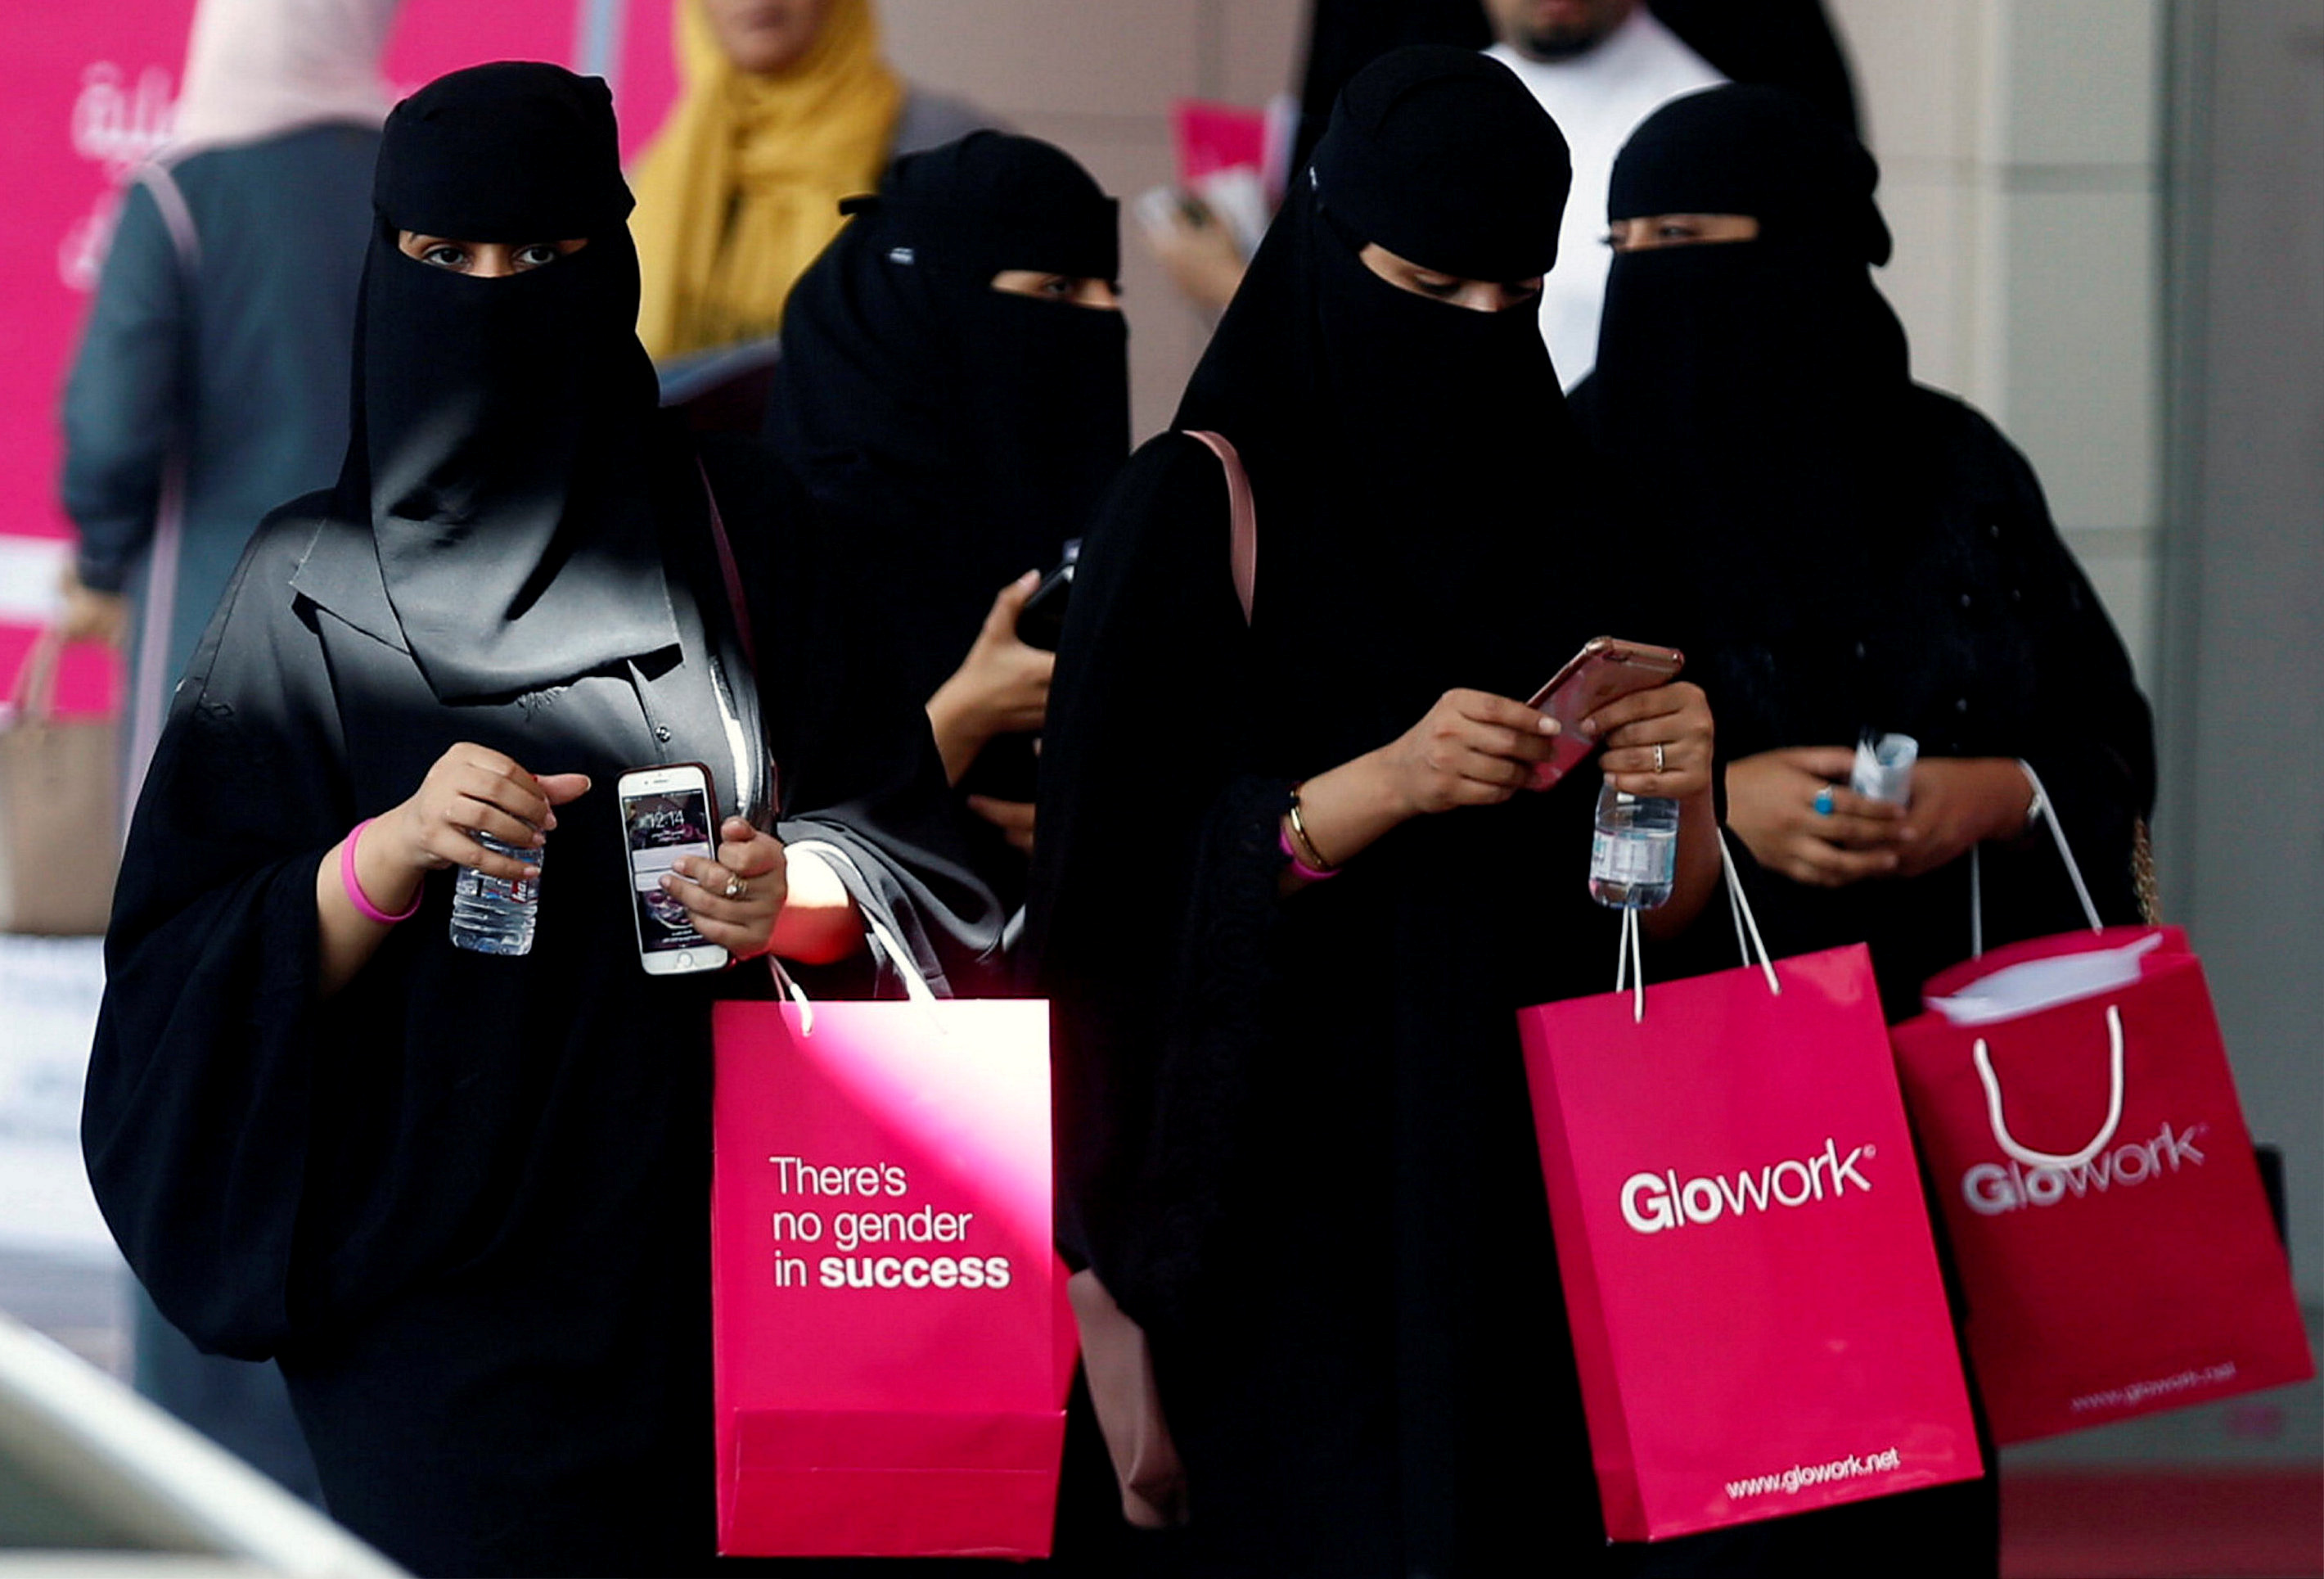 Women in Saudi Arabia attent an employment recruitment event for women.